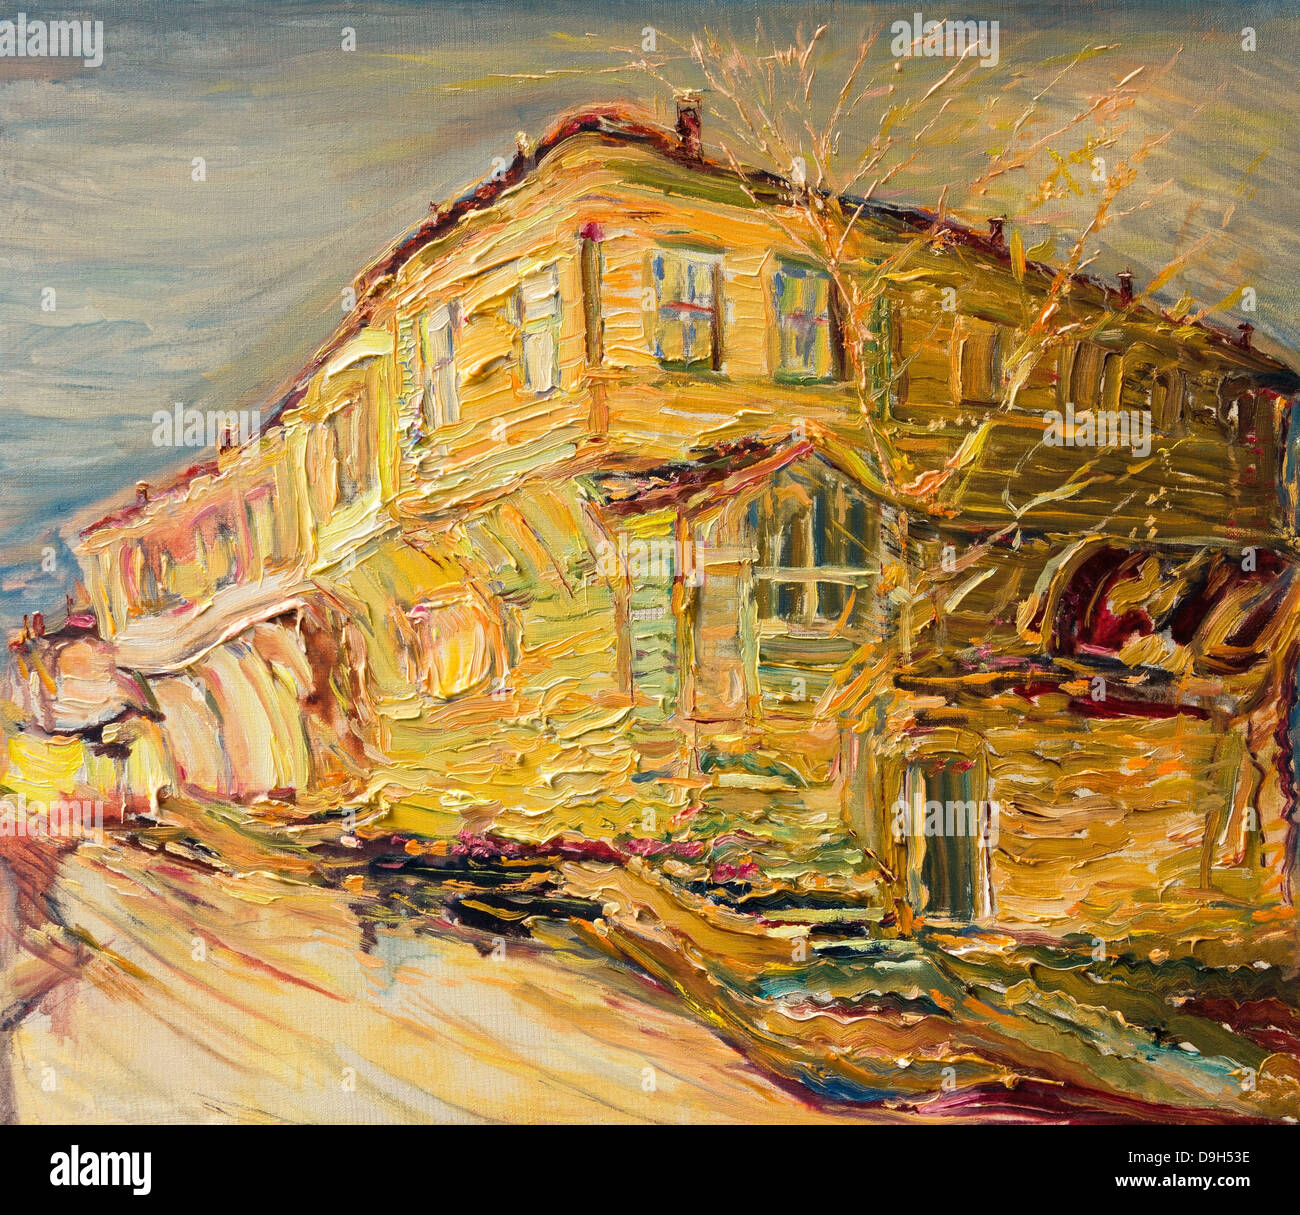 Une peinture à l'huile sur toile d'une vieille maison bulgare colorés peints dans des couleurs d'or à la fin de l'automne. Banque D'Images